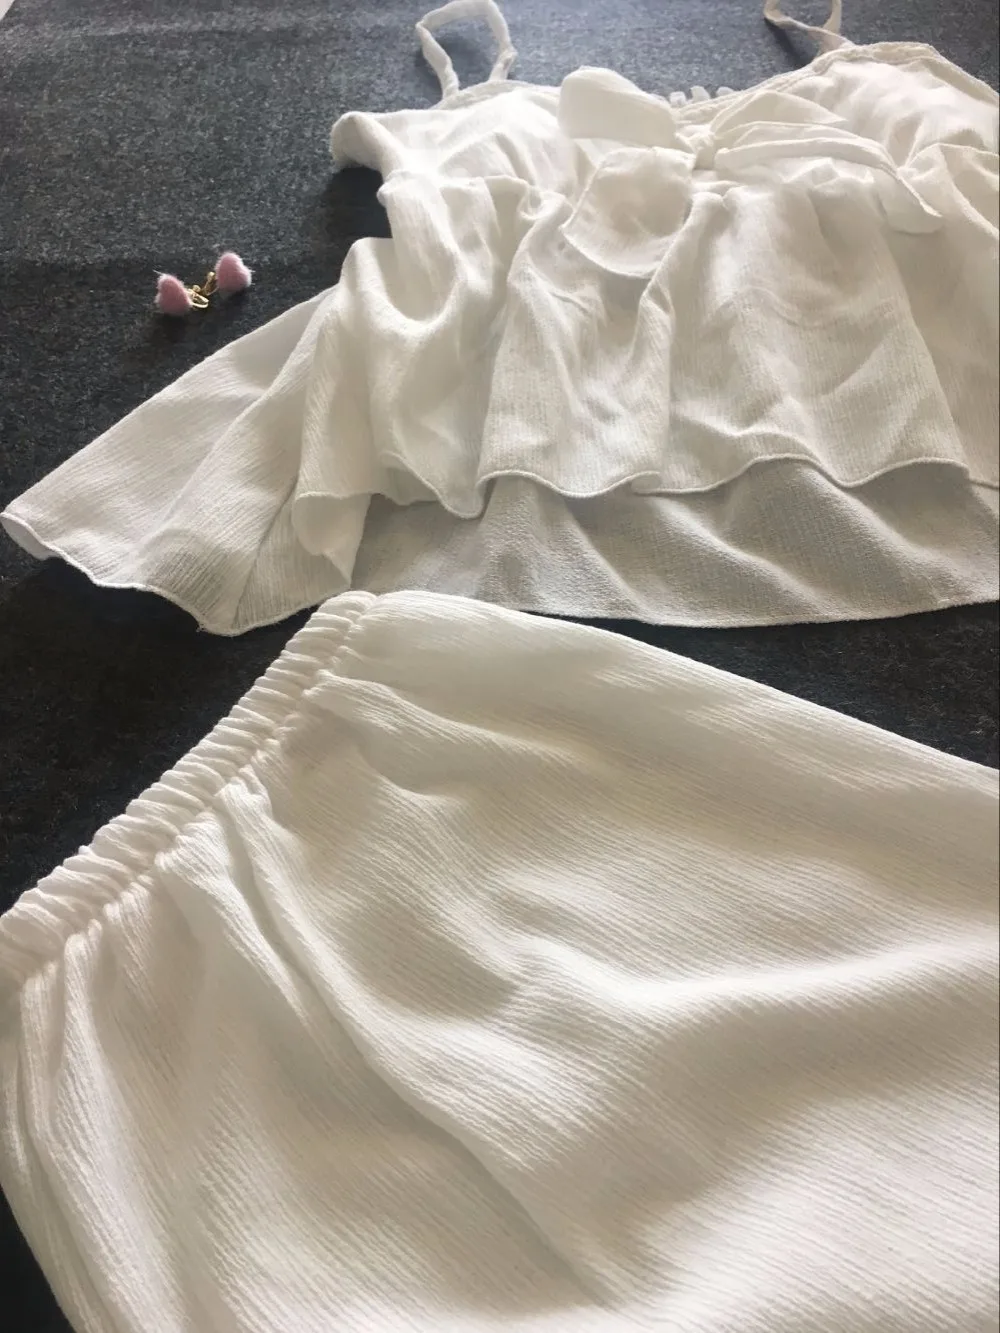 Yomrzl A422 Новое поступление, летний хлопковый женский пижамный комплект, белый милый комплект для сна, 3/4 длинные штаны, одежда для сна, домашняя одежда